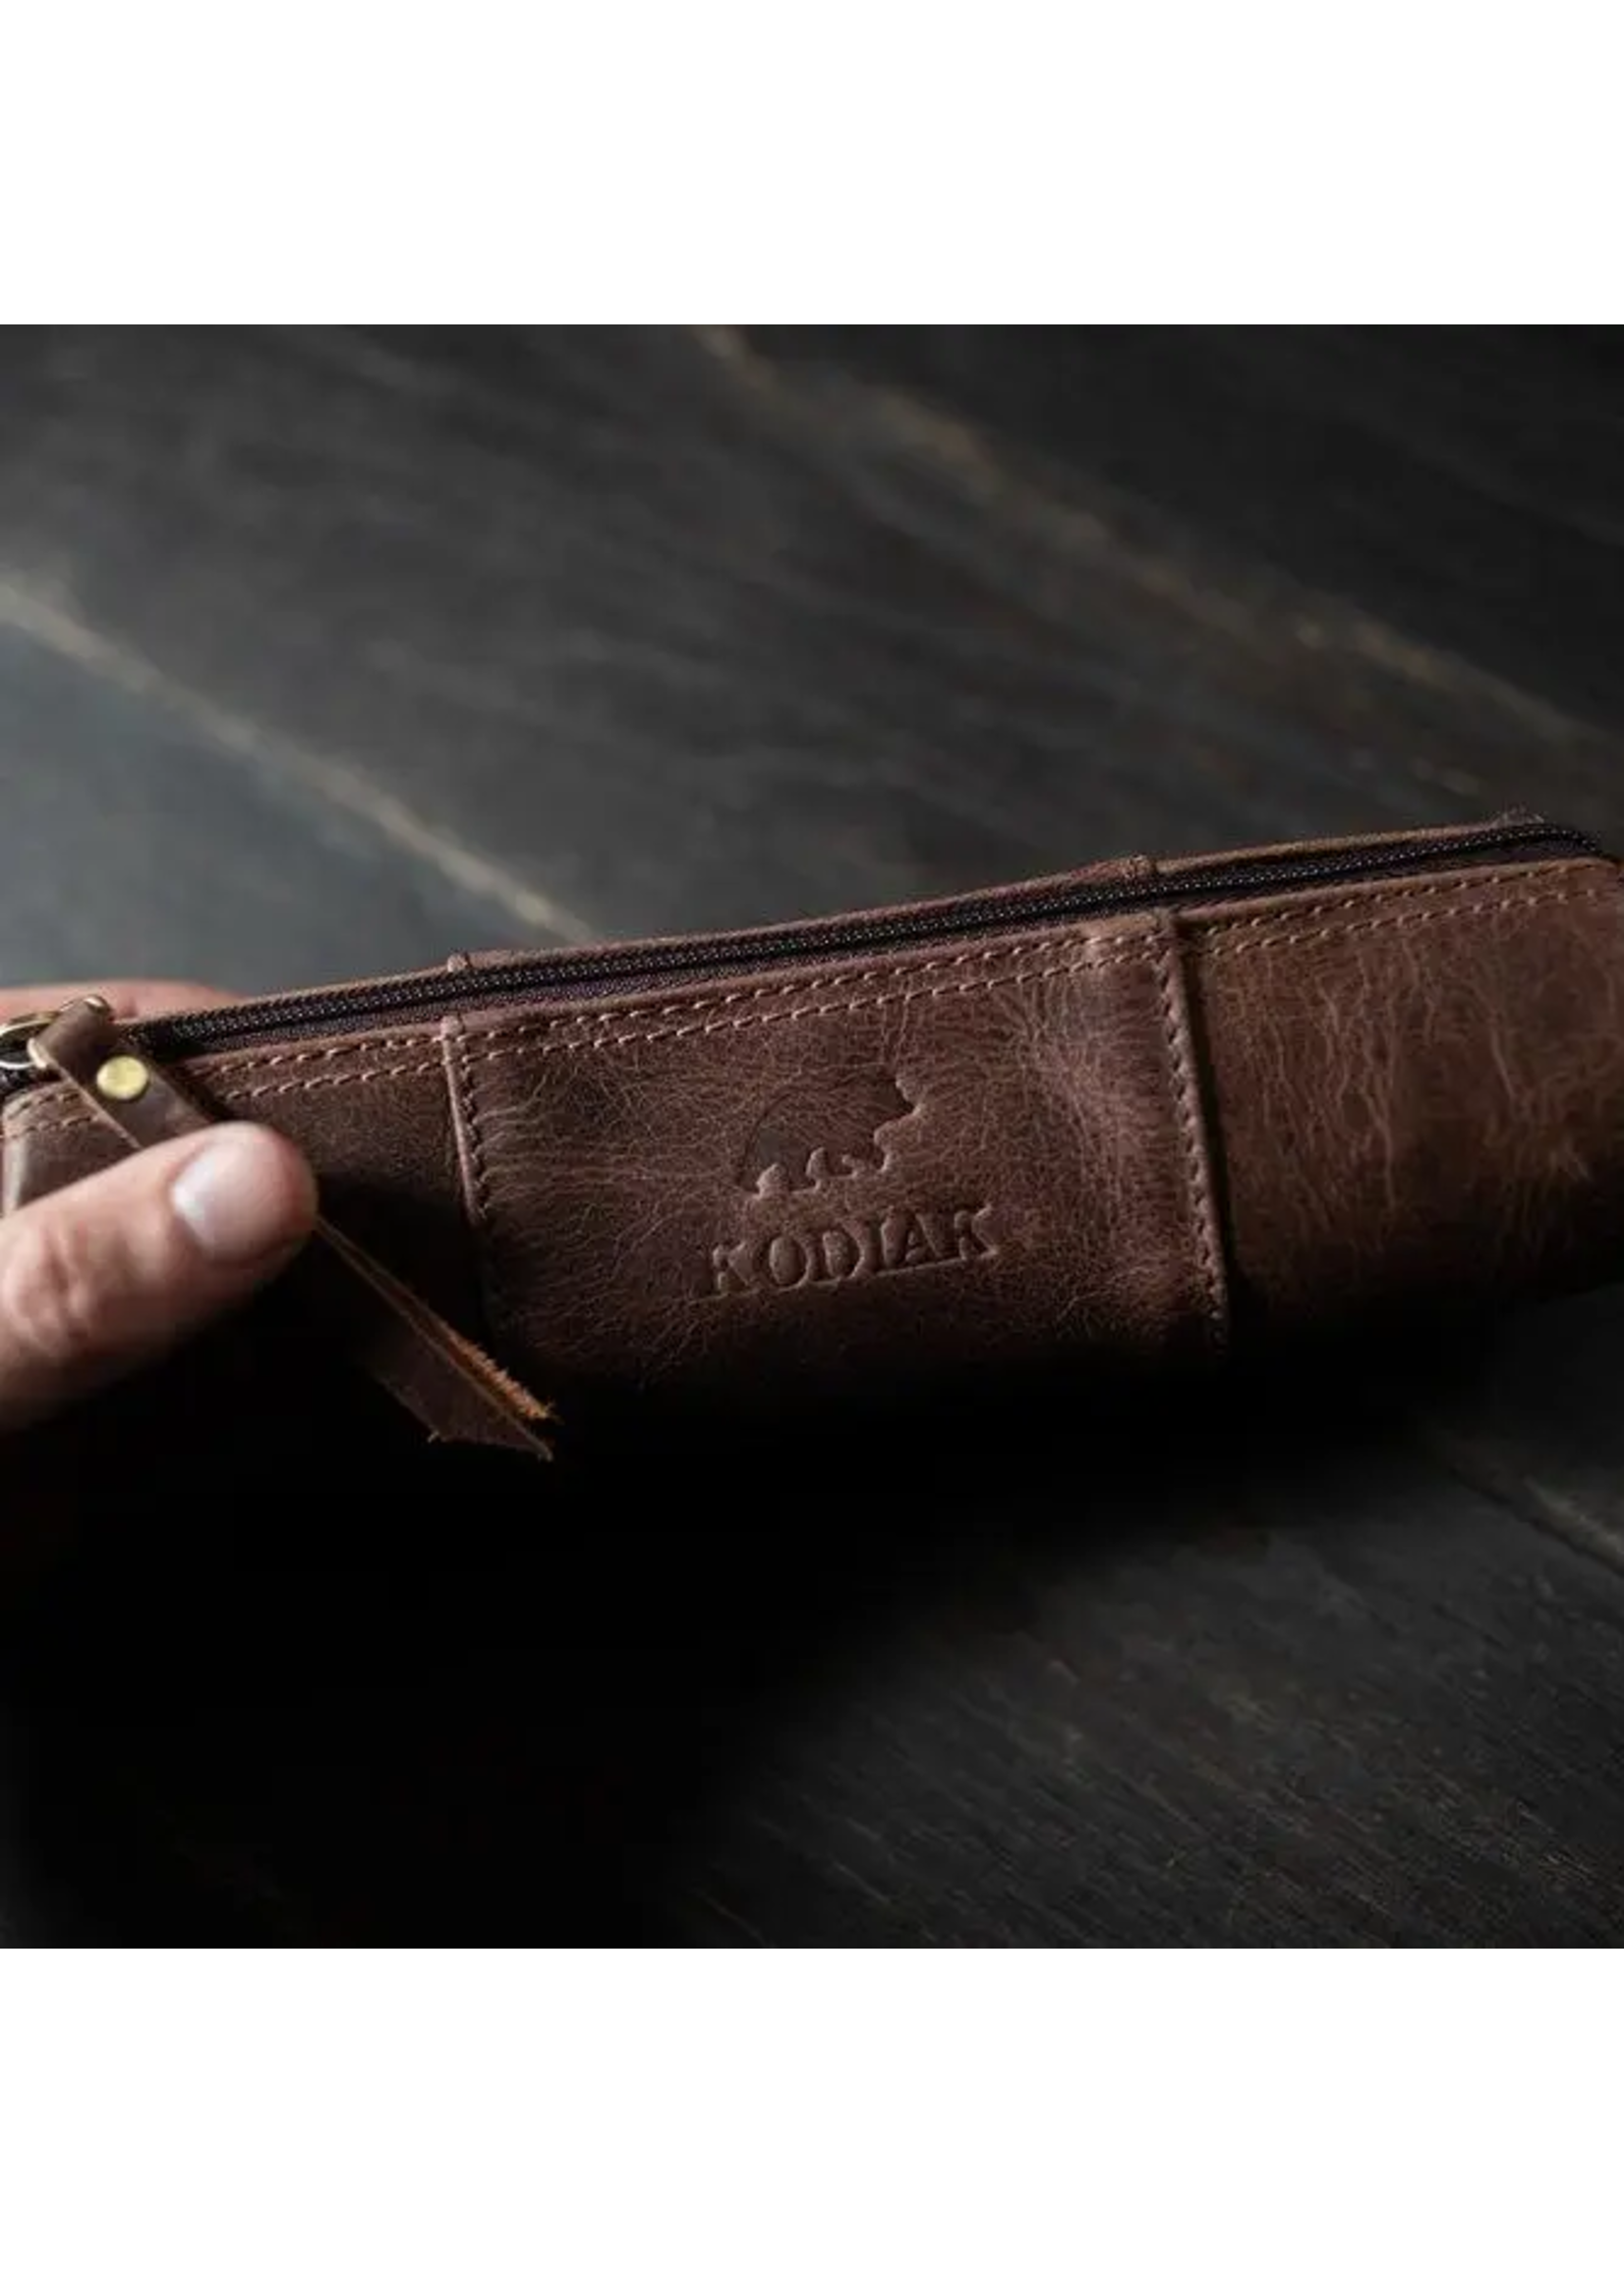 Kodiak Leather Leather Pencil Case